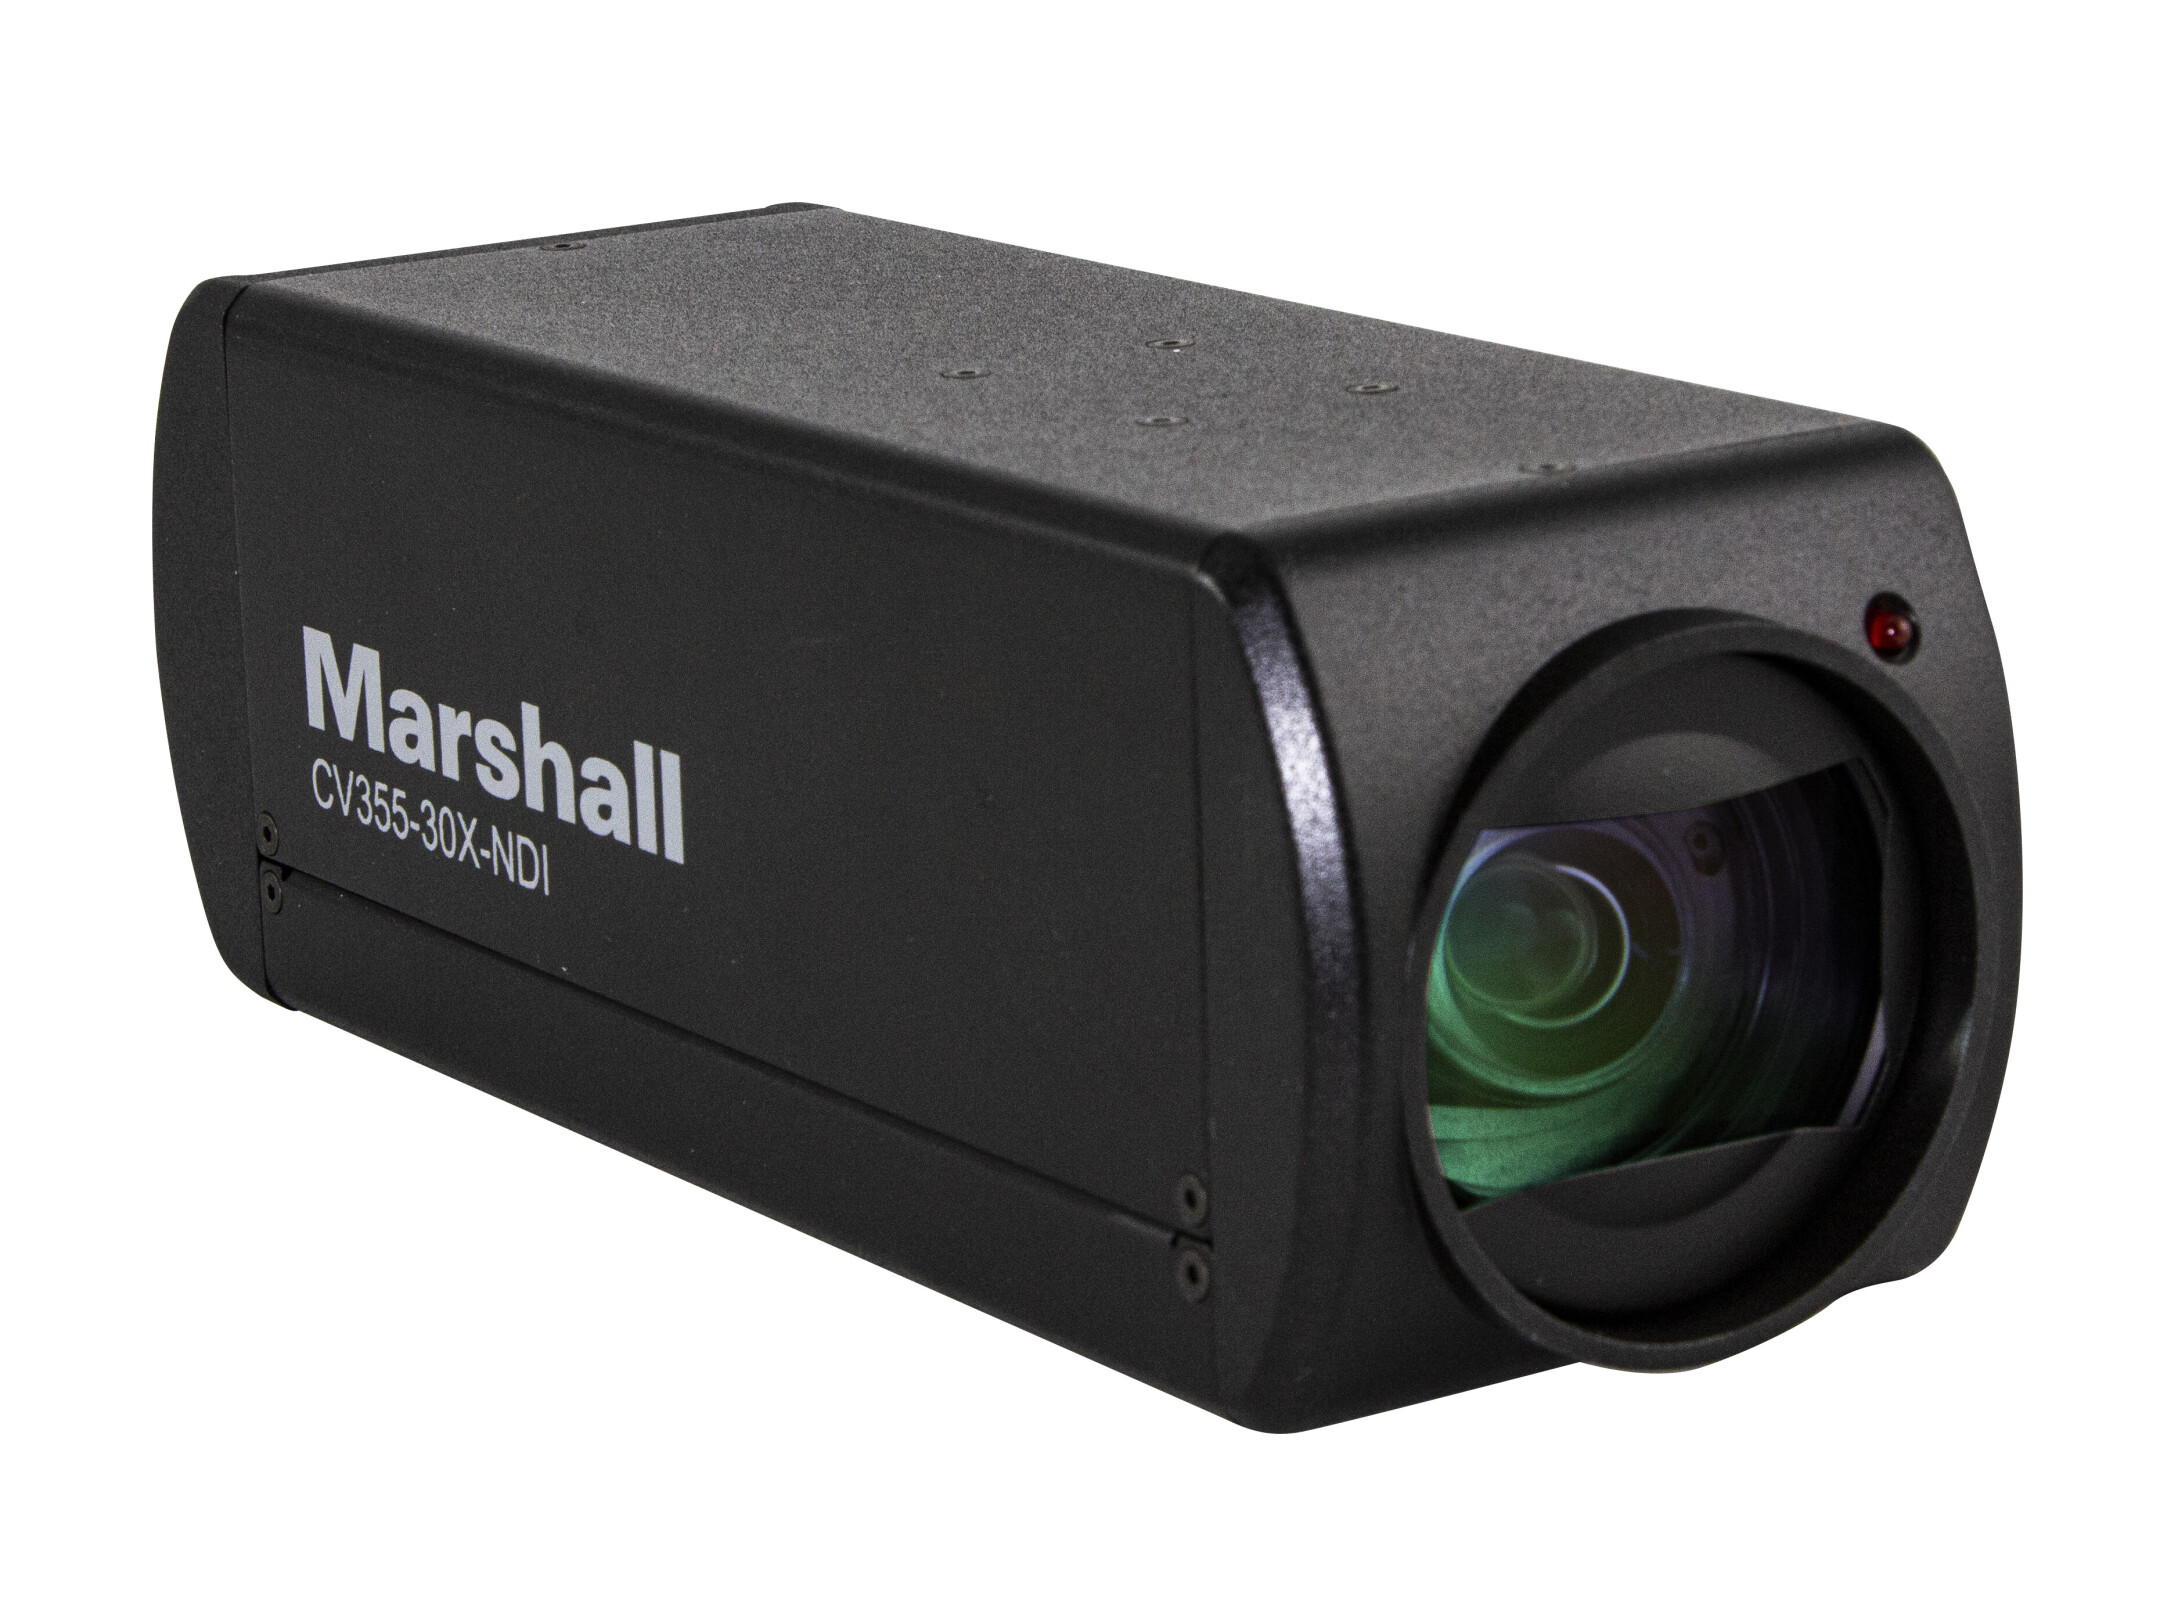 Marshall-Electronics-CV355-30X-NDI-NDI-enabled-Full-HD-Camera